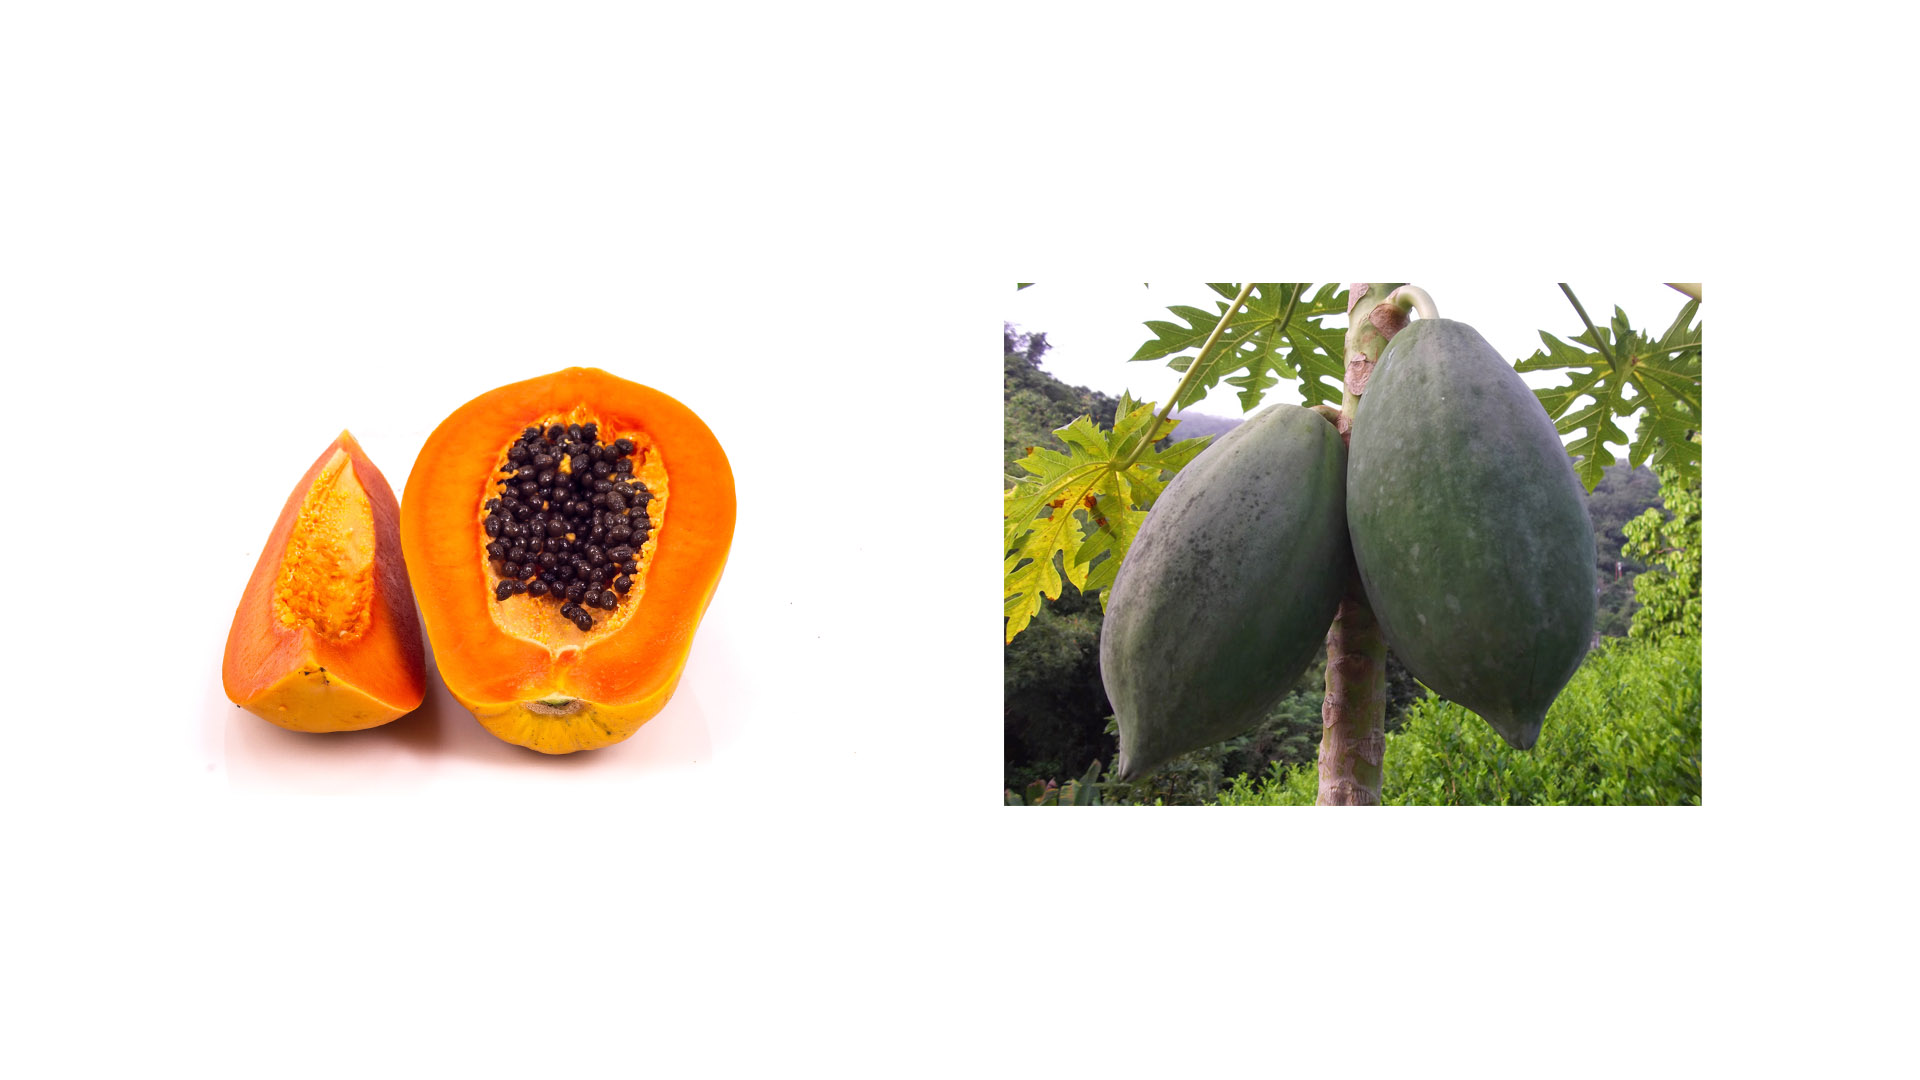 Antes era considerada una fruta exótica y difícil de encontrar. Ahora, podemos tenerla todo el año y disfrutar de sus propiedades